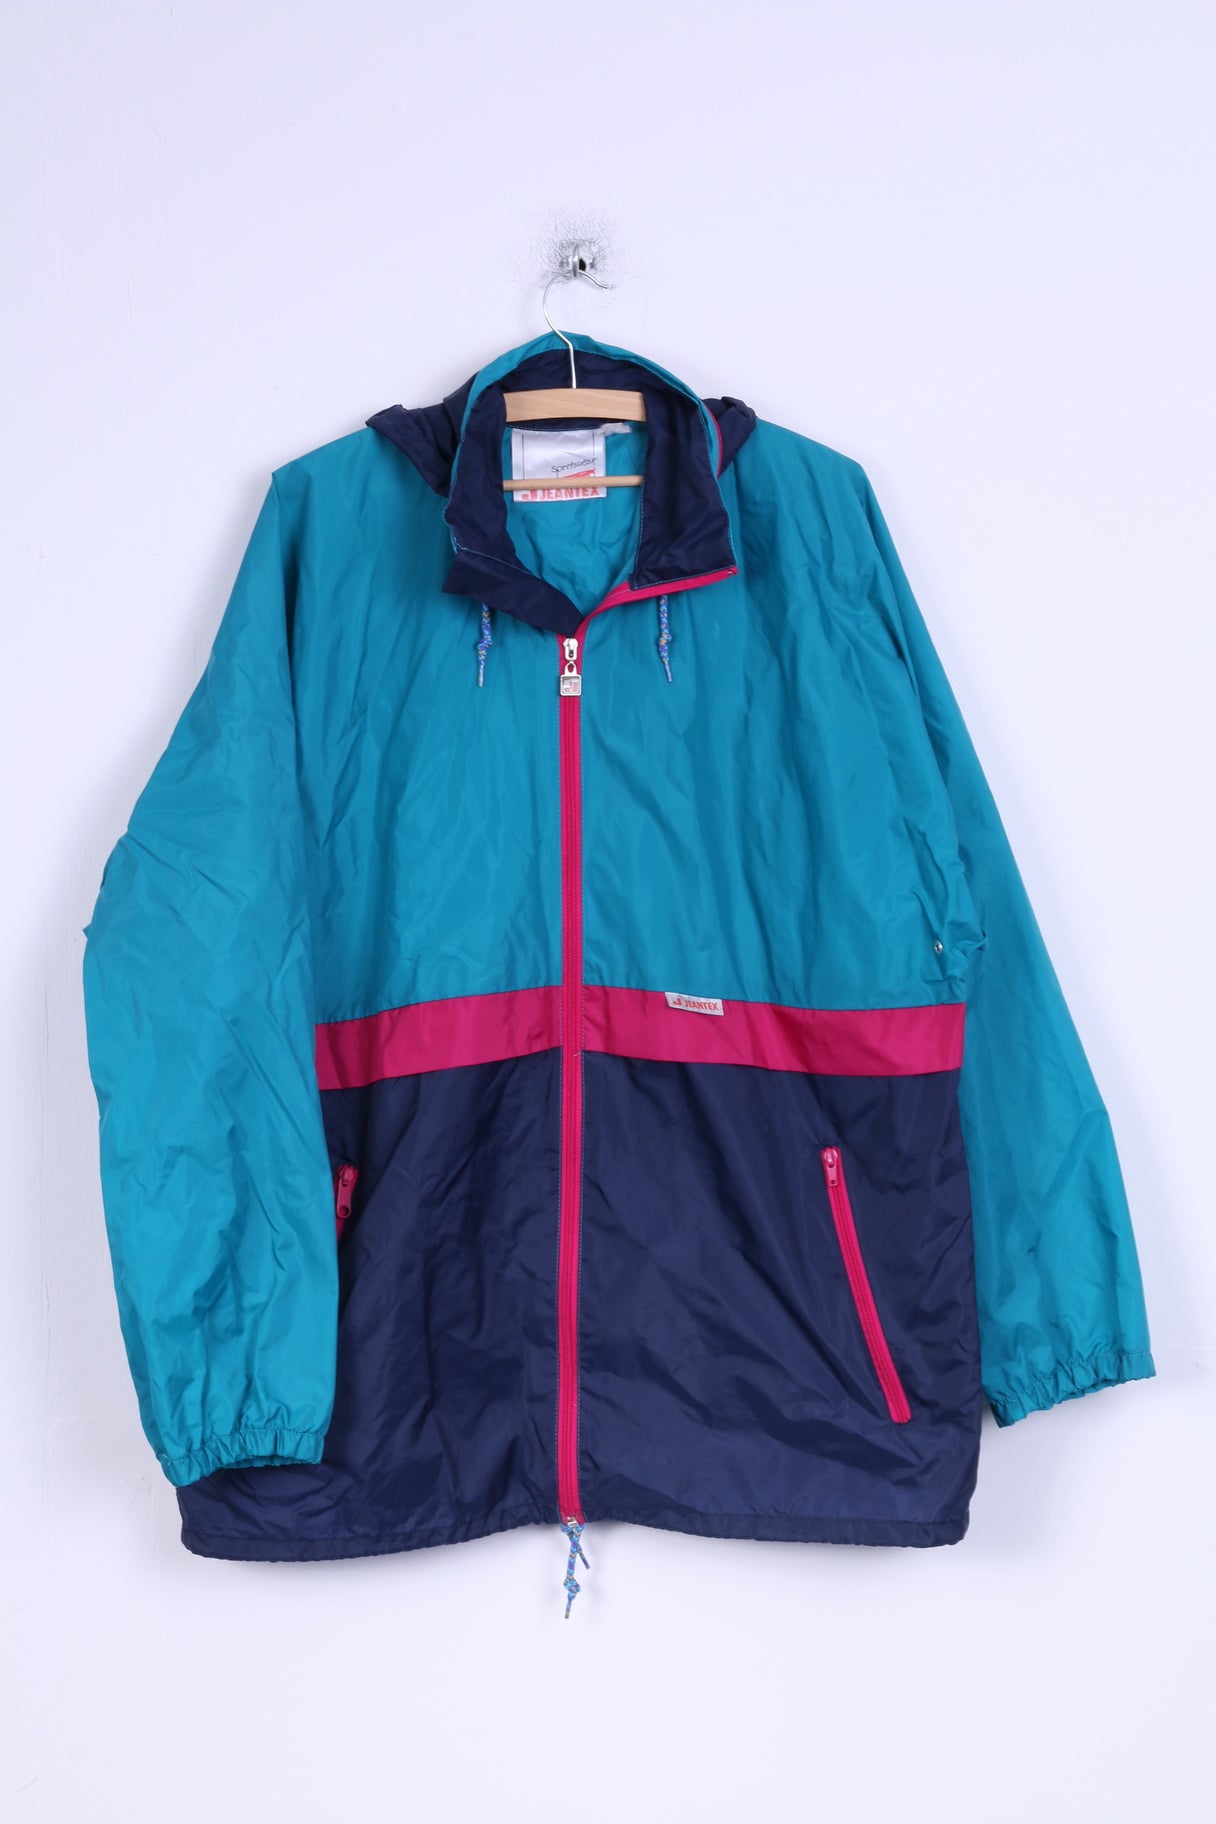 Jeantex Mens L Rain Jacket Sportswear Nylon Waterproof Hodded Top ...